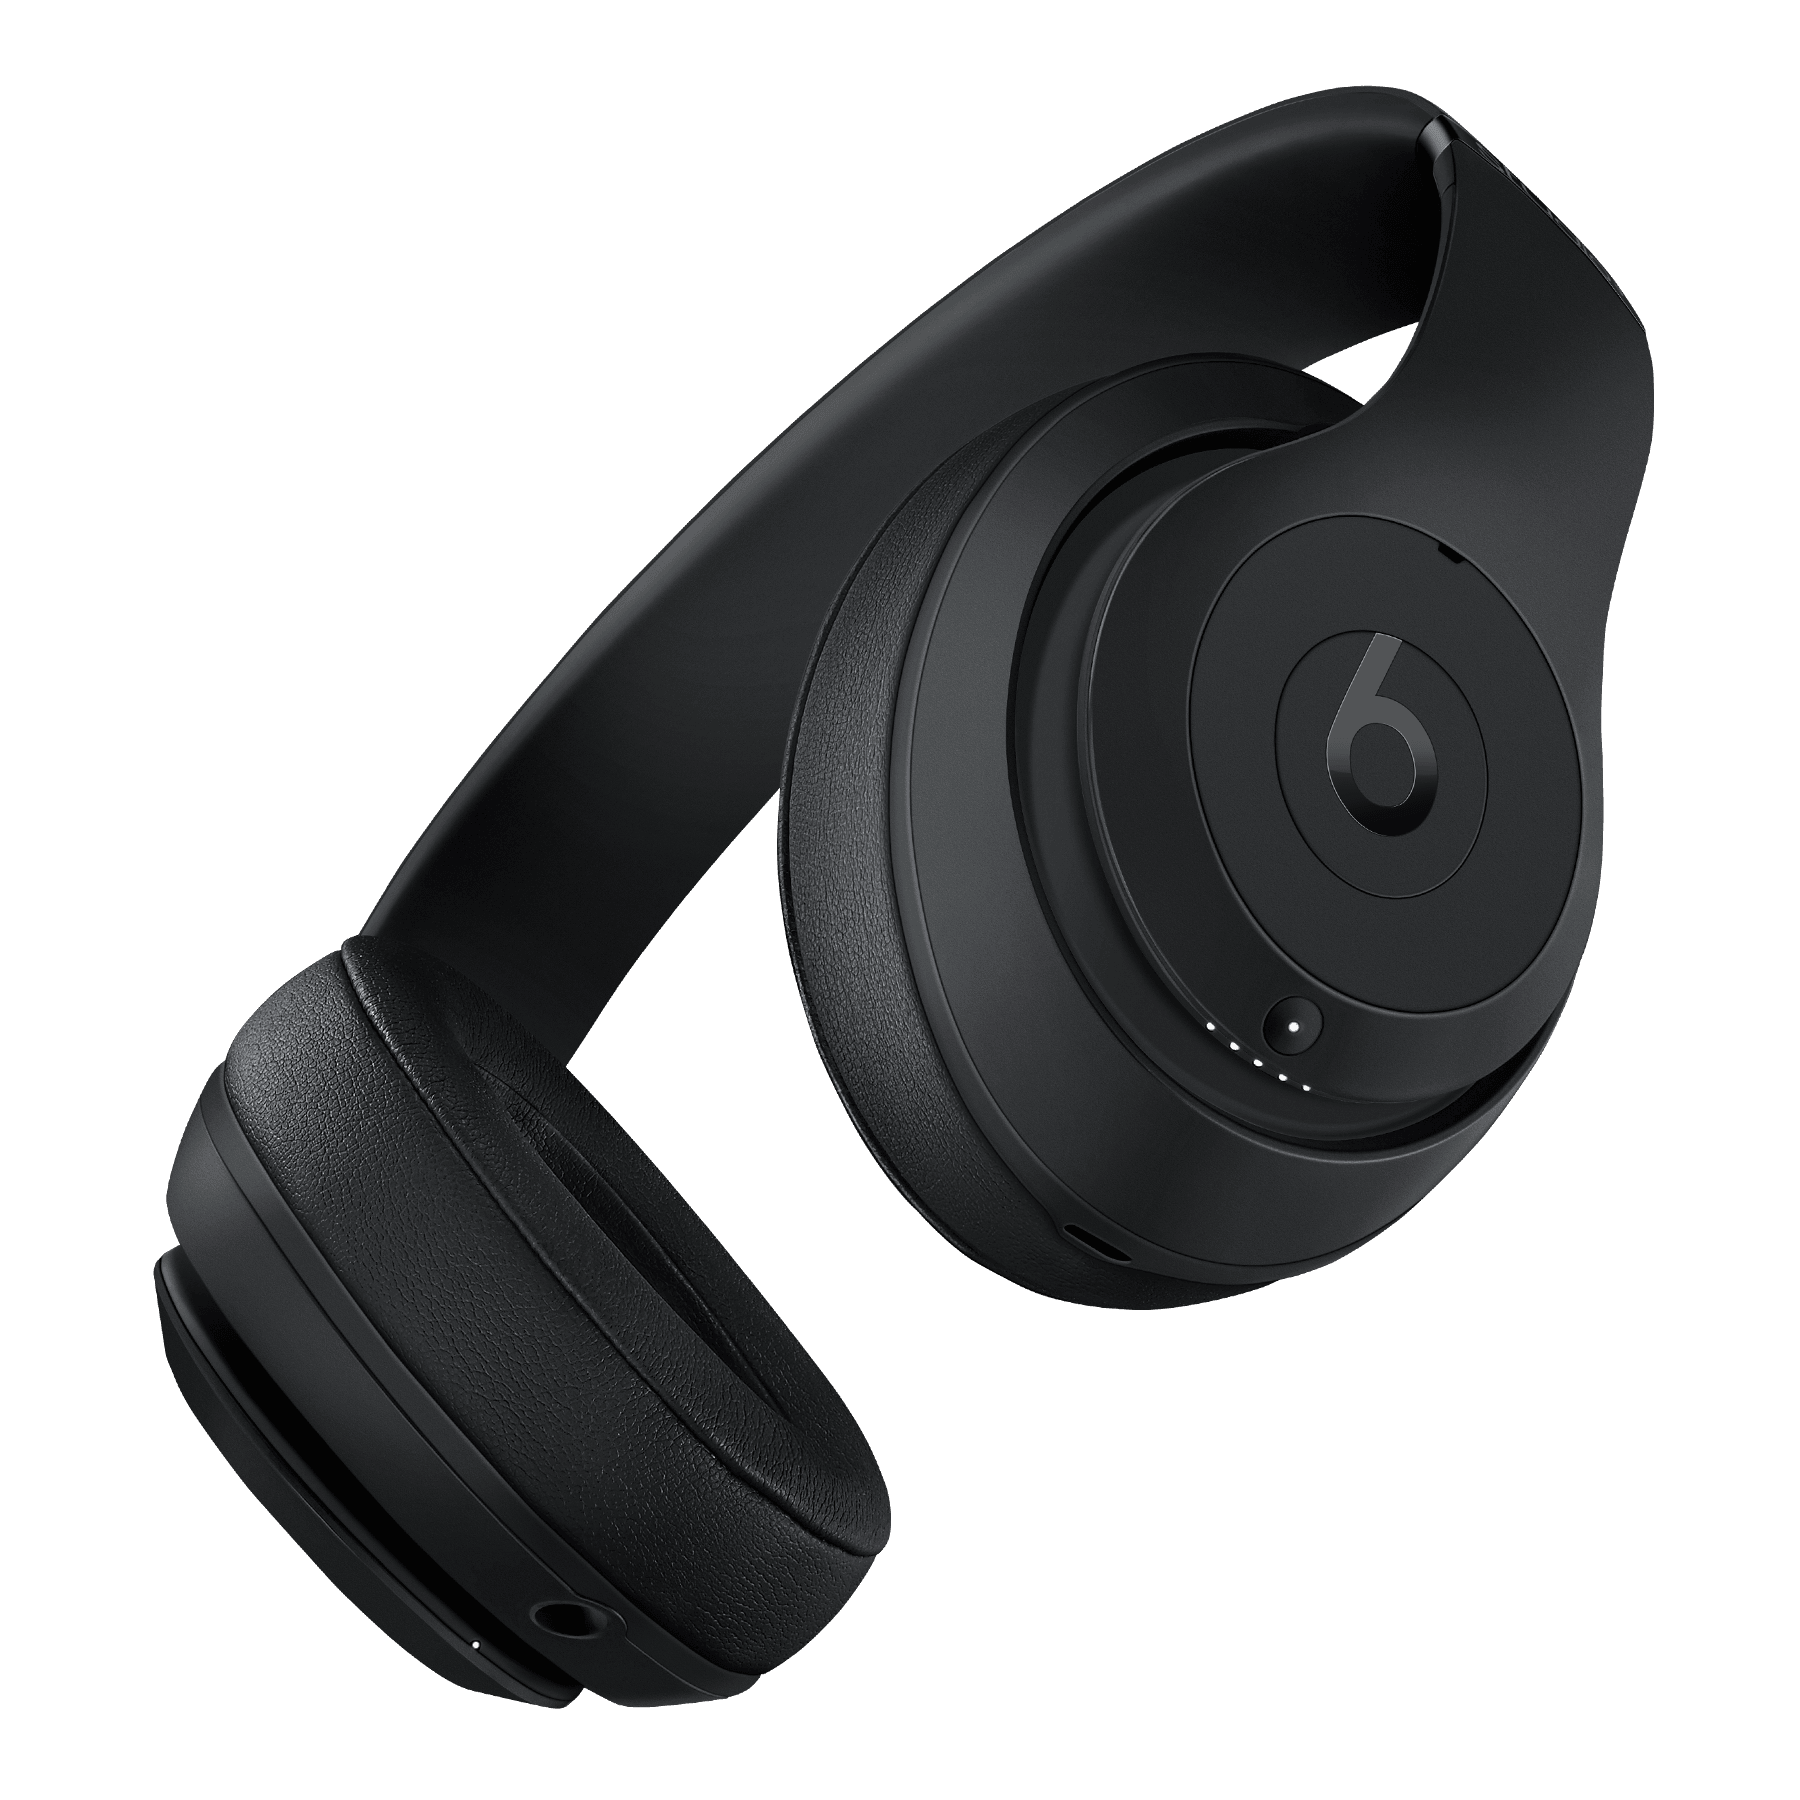 Beats Studio3 Wireless headphones 